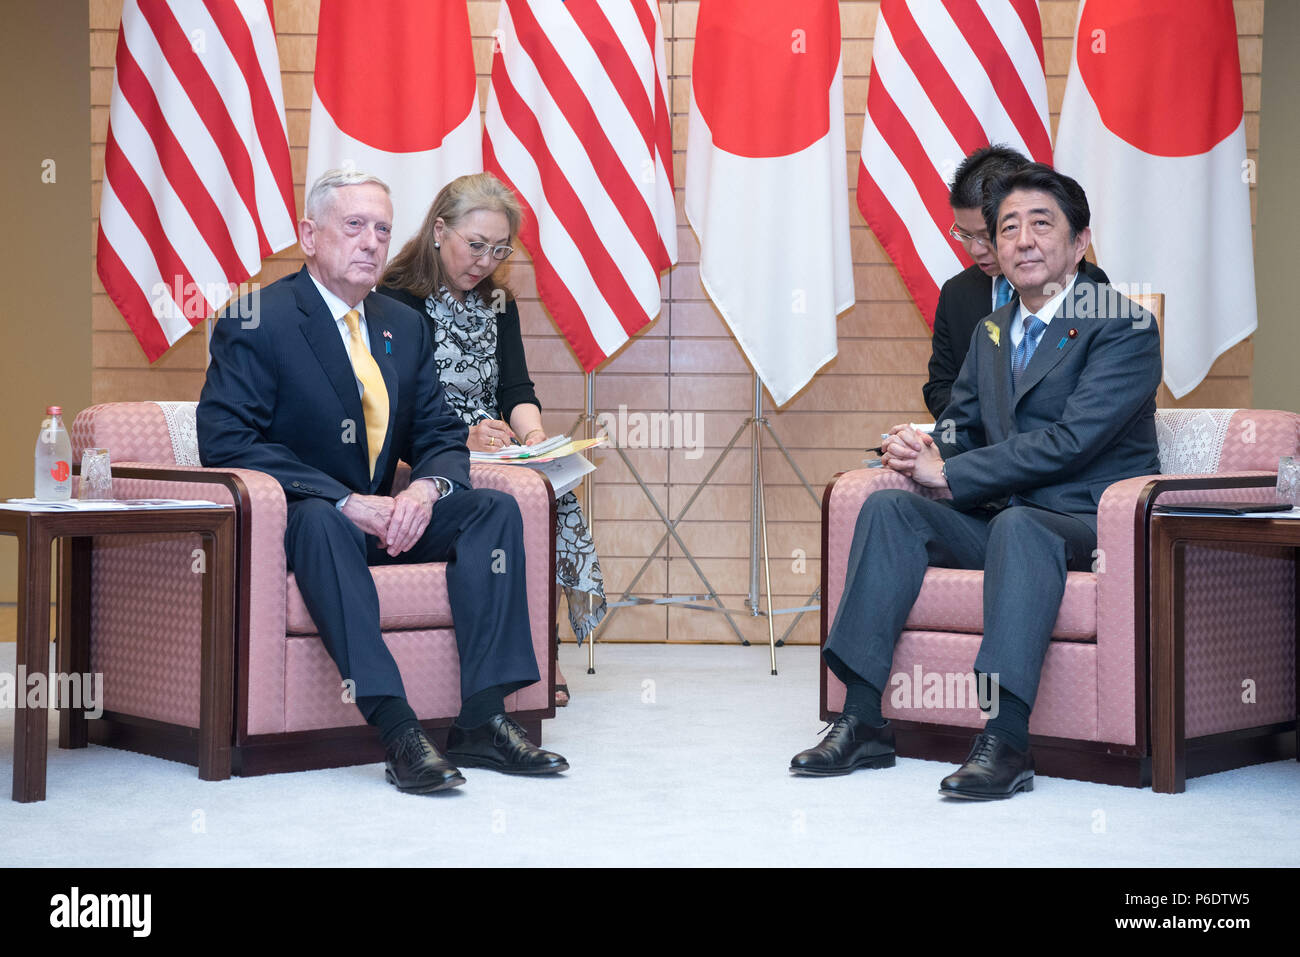 El Secretario de Defensa de EE.UU. James Mattis, izquierda, durante una reunión bilateral con el Primer Ministro japonés Shinzo Abe en Kantei, la residencia oficial del 29 de junio de 2018, en Tokio, Japón. Mattis se encuentra en Tokio para tranquilizar al gobierno japonés tras la cumbre con el Presidente Trump y el líder norcoreano Kim Jong-nu. Foto de stock